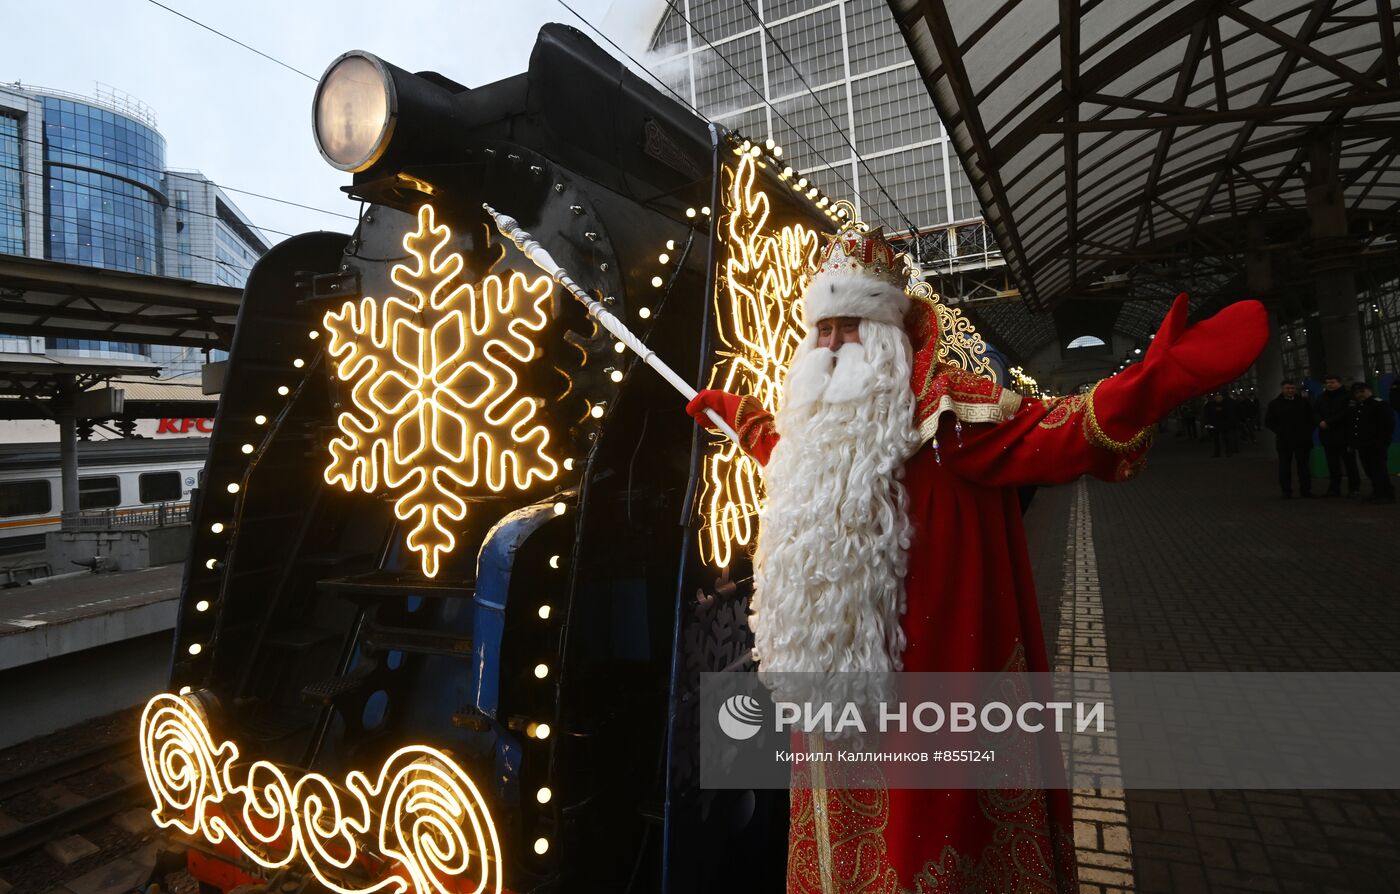 Отправление поезда Деда Мороза с Киевского вокзала